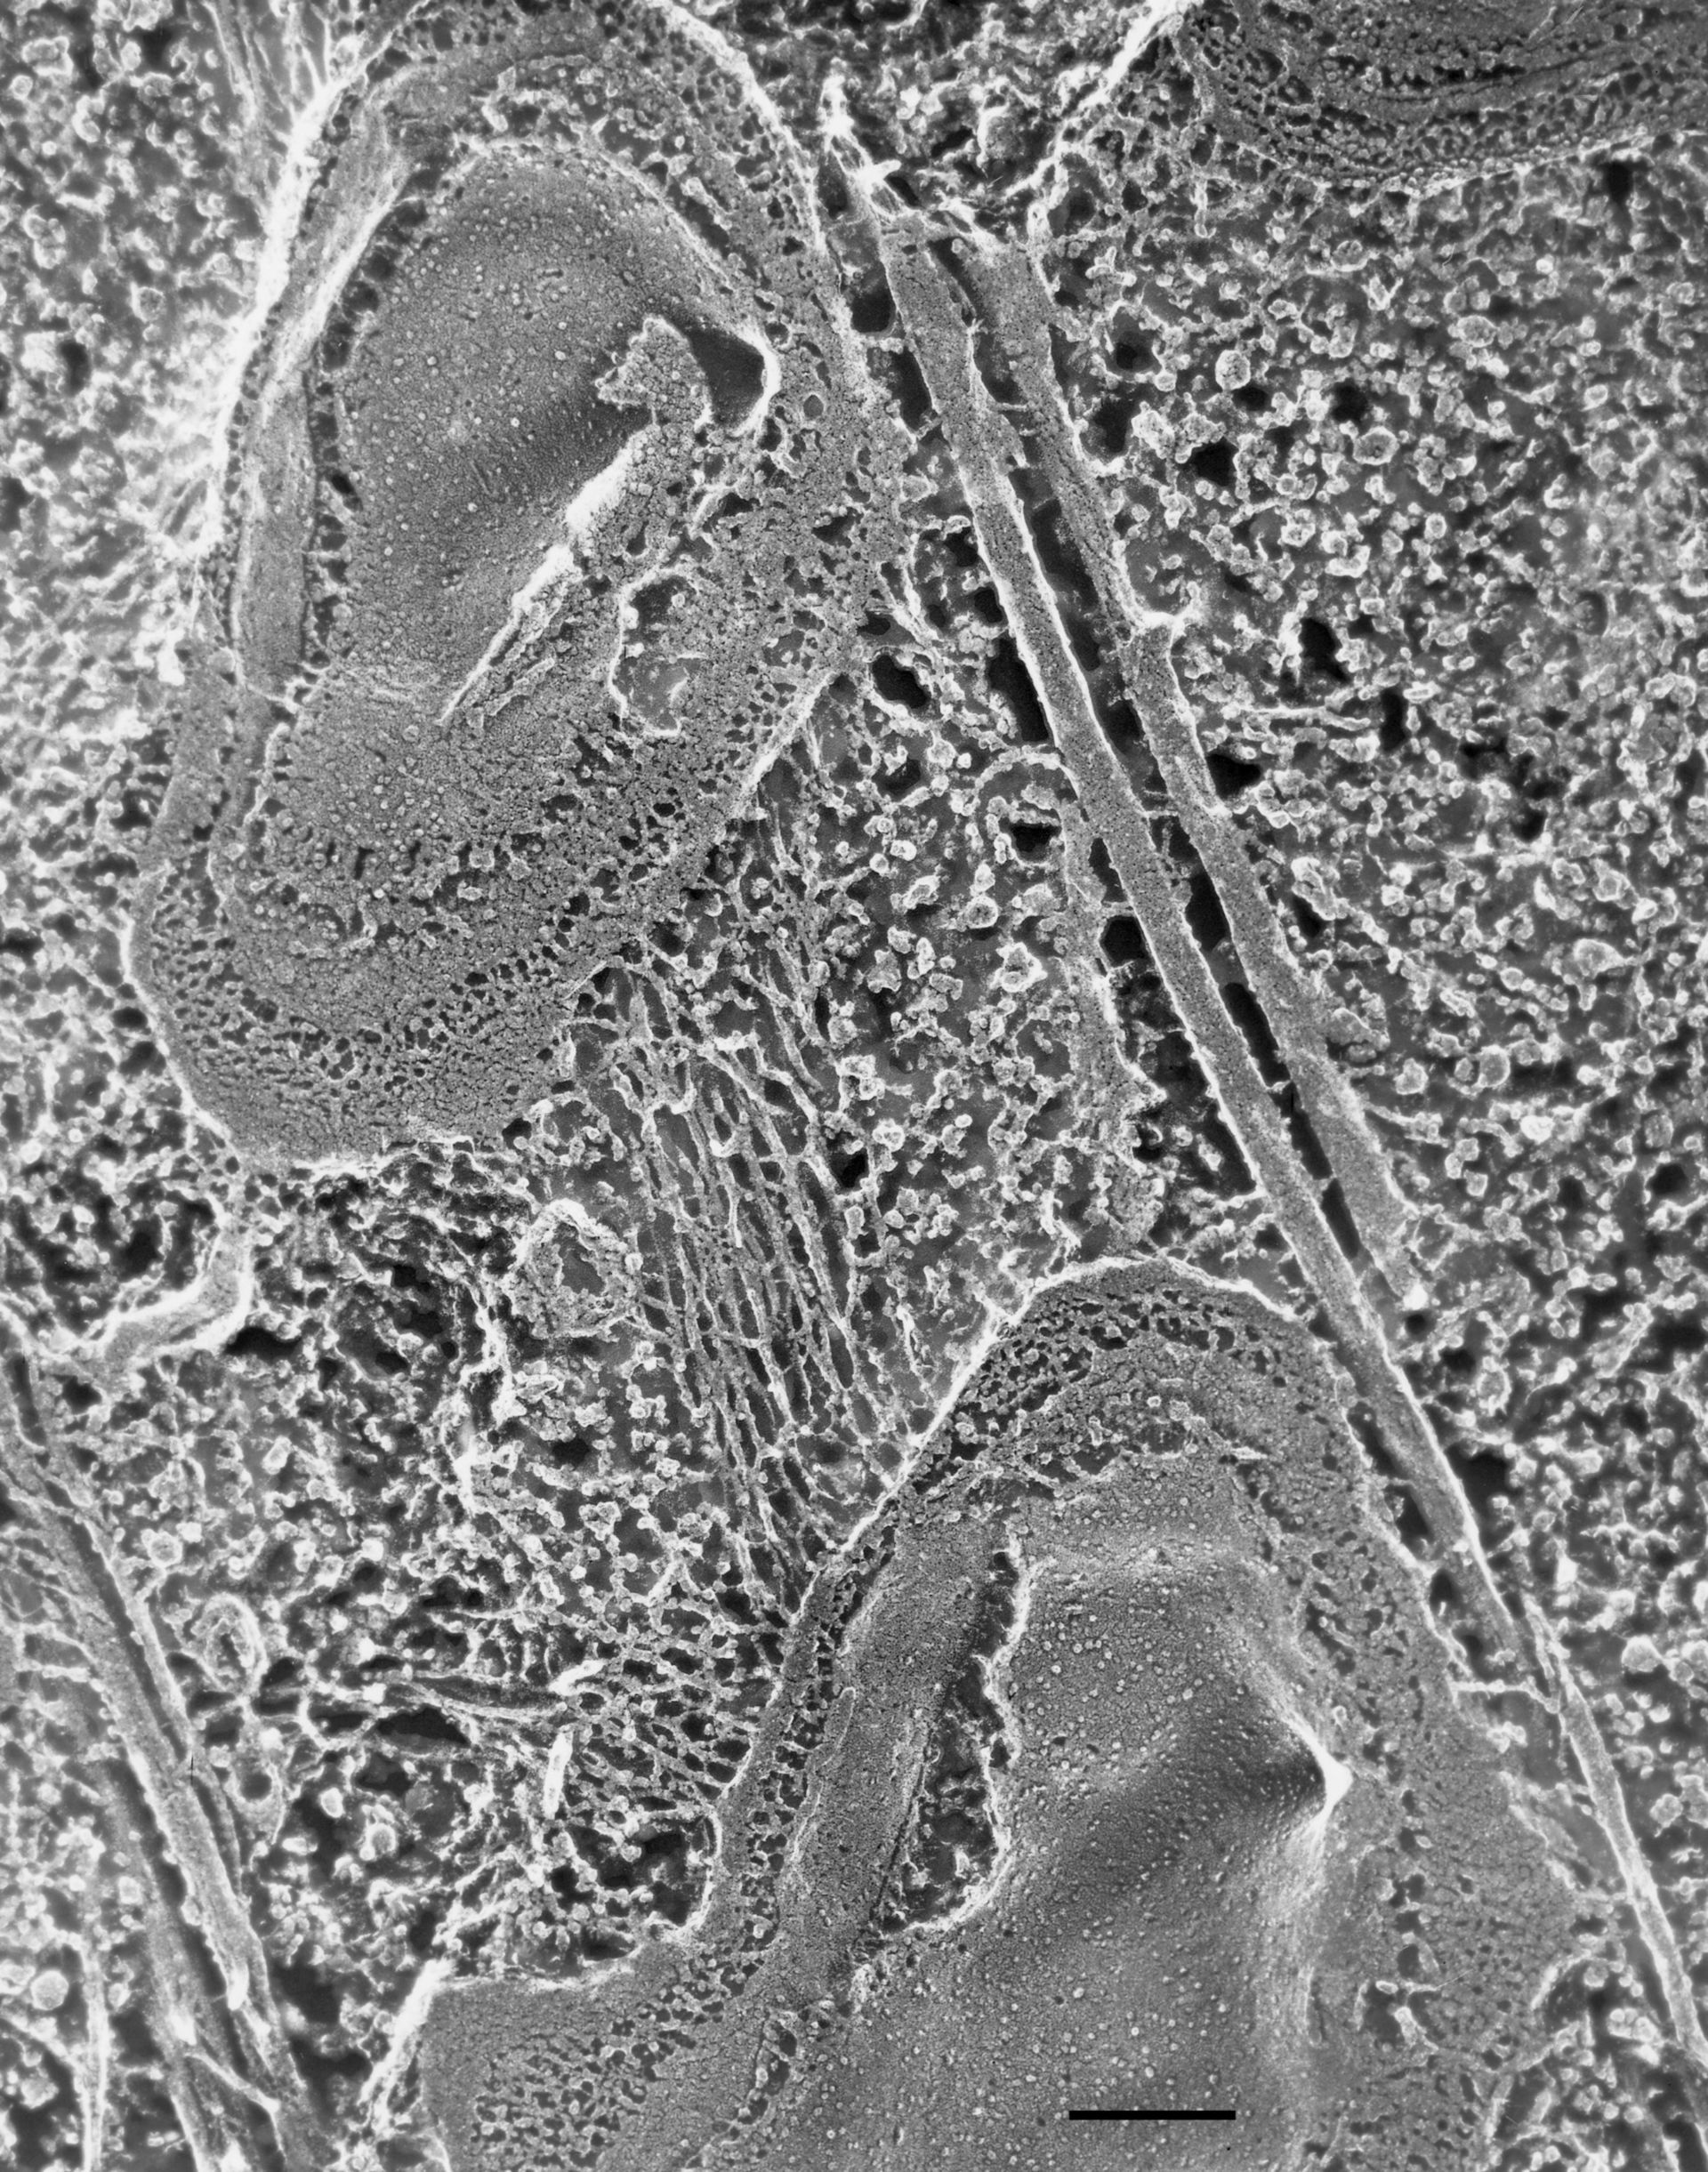 Paramecium multimicronucleatum (Cell cortex) - CIL:36616